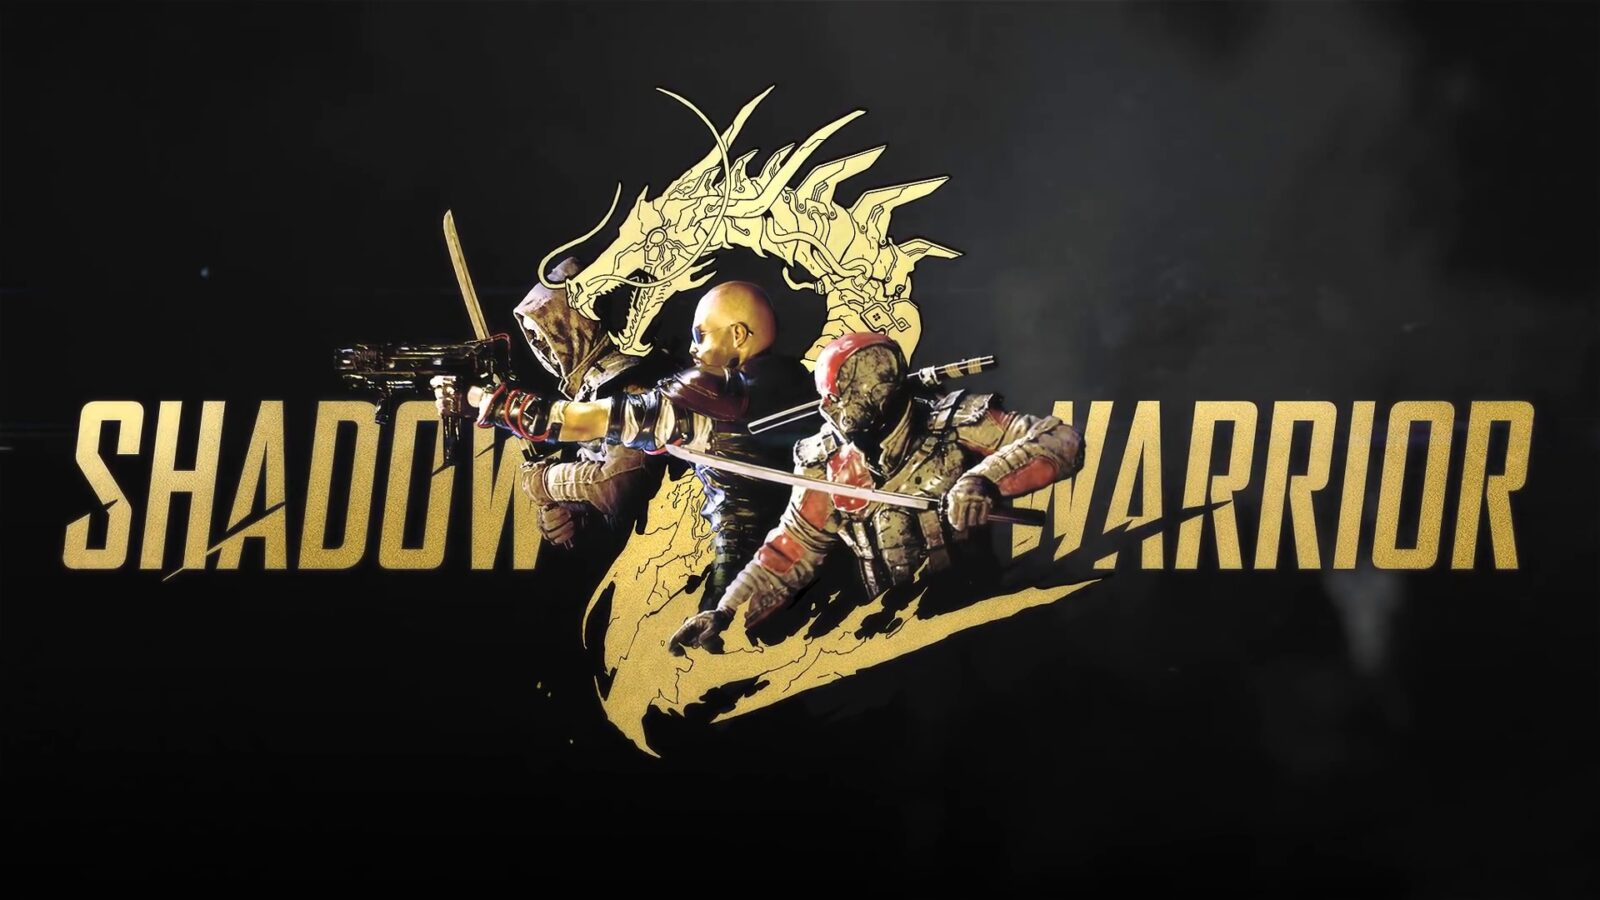 GOG.com’un kampanyası sayesinde, Steam'de 59 TL’ye satılan Shadow Warrior 2'ye ömür boyu sahip olabileceksiniz.